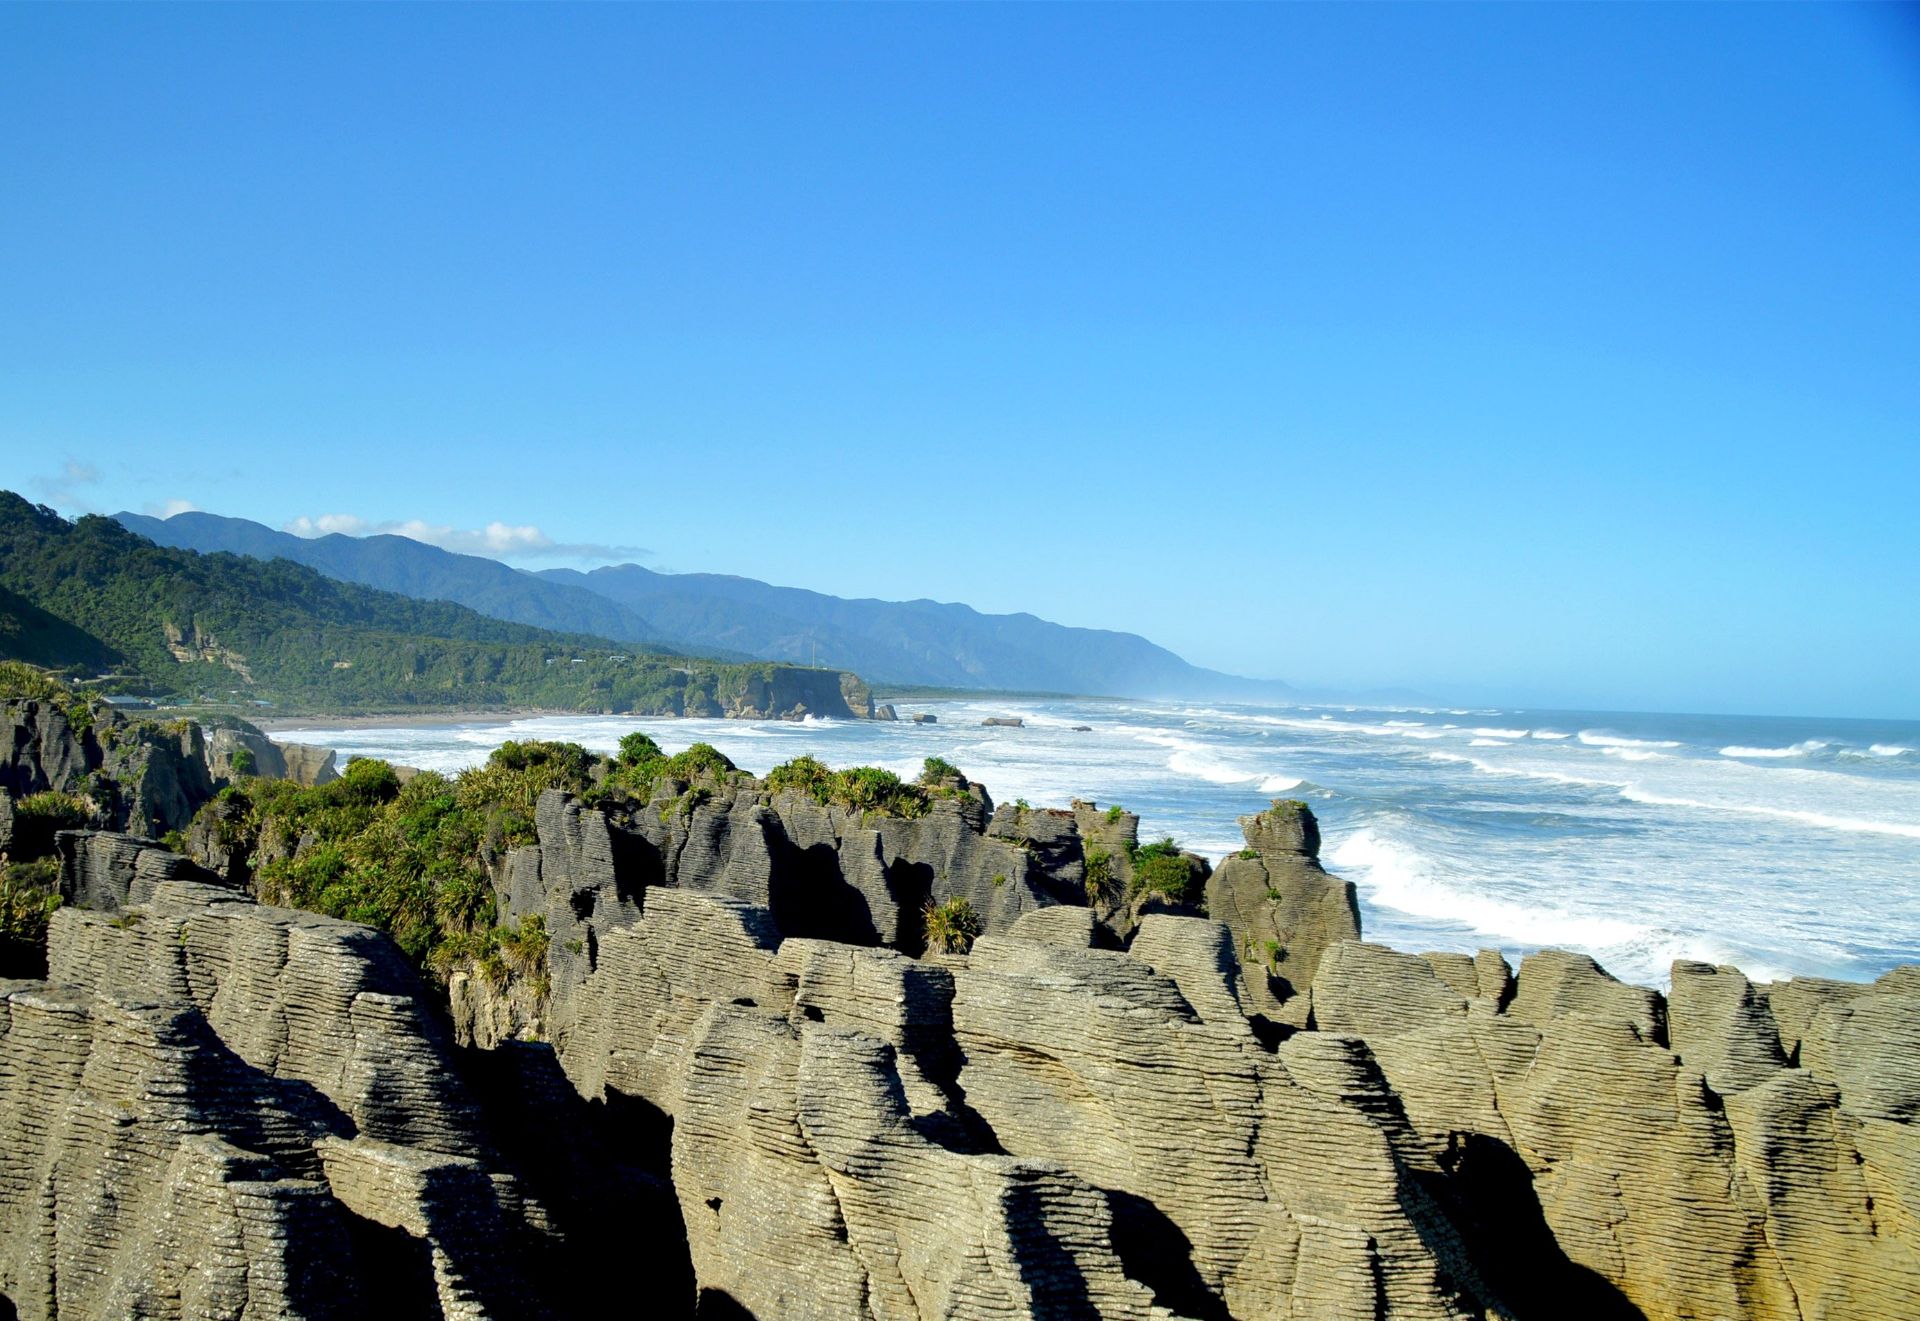 千层饼一样的岩石，层层叠叠的从海中堆砌，形成千姿百态的各种造型，海浪冲击小孔更形成人工彩虹。